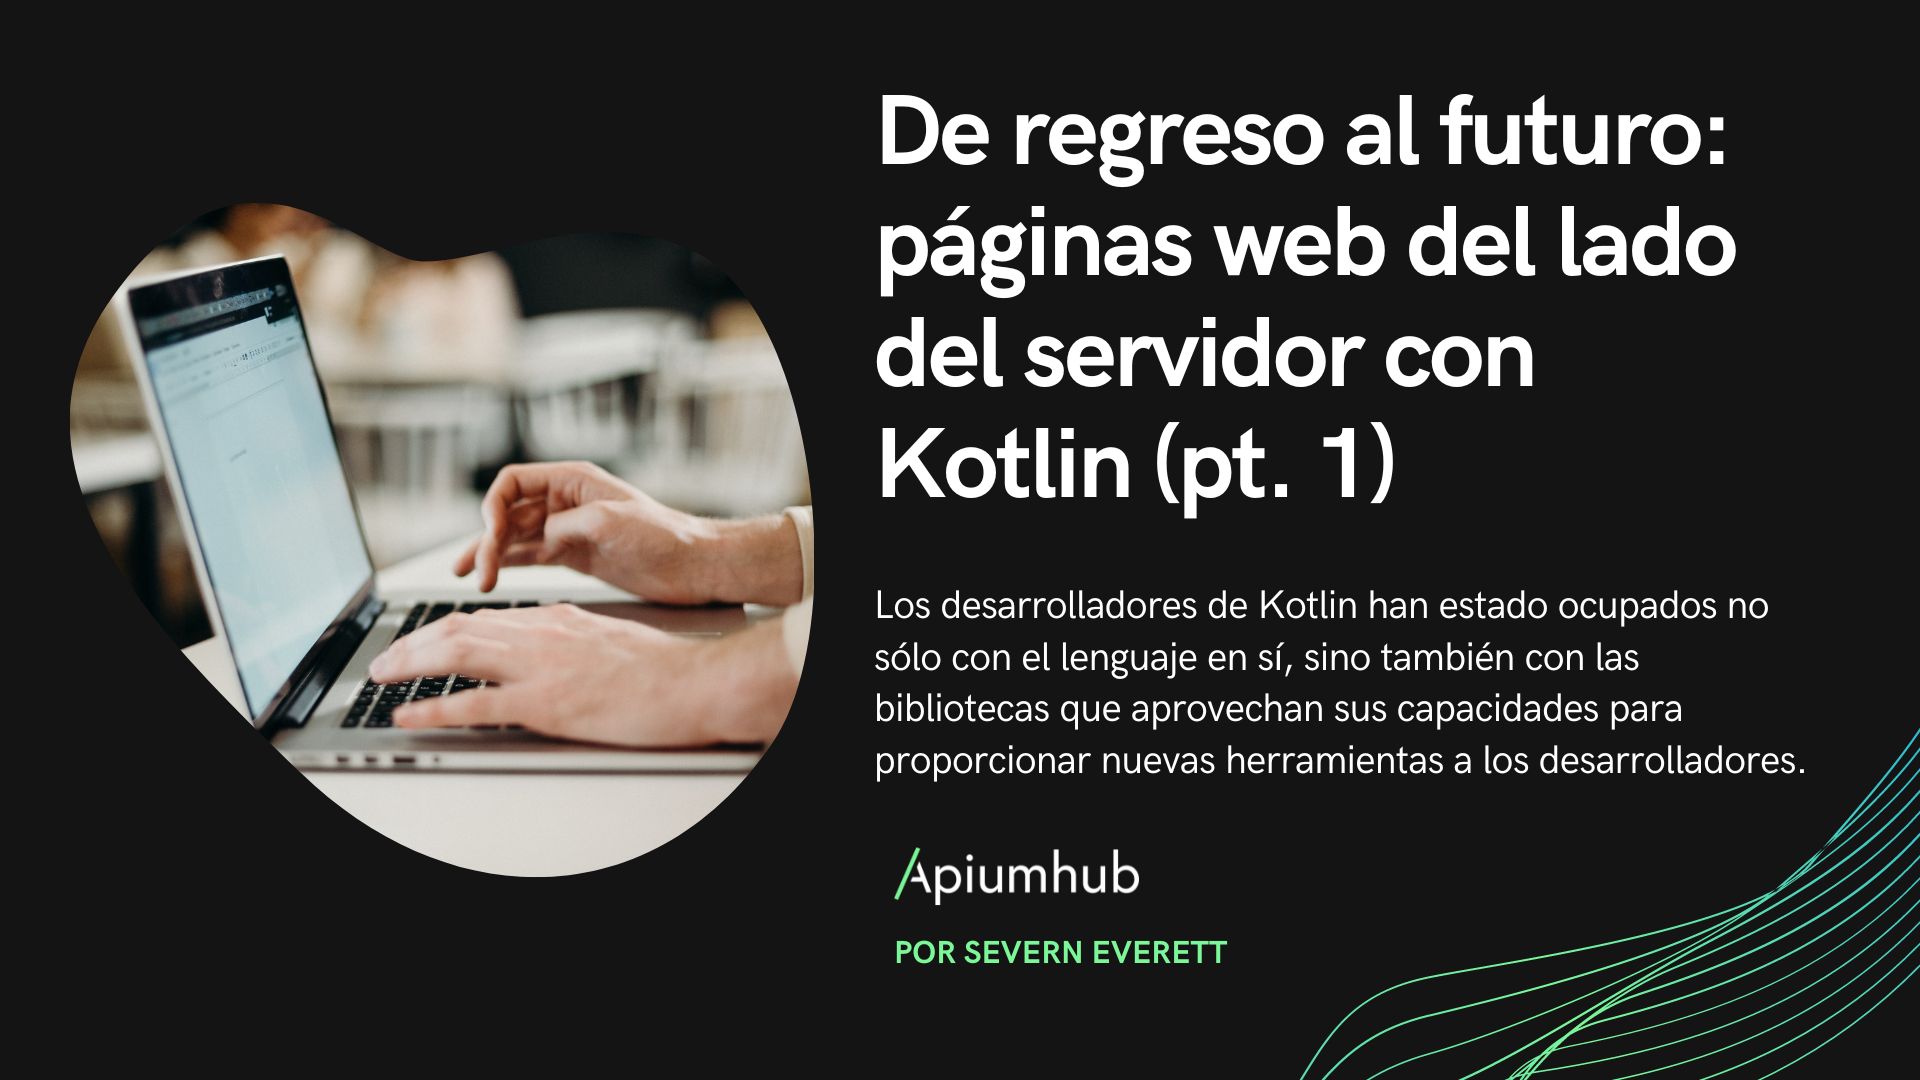 De regreso al futuro: páginas web del lado del servidor con Kotlin (pt.1)